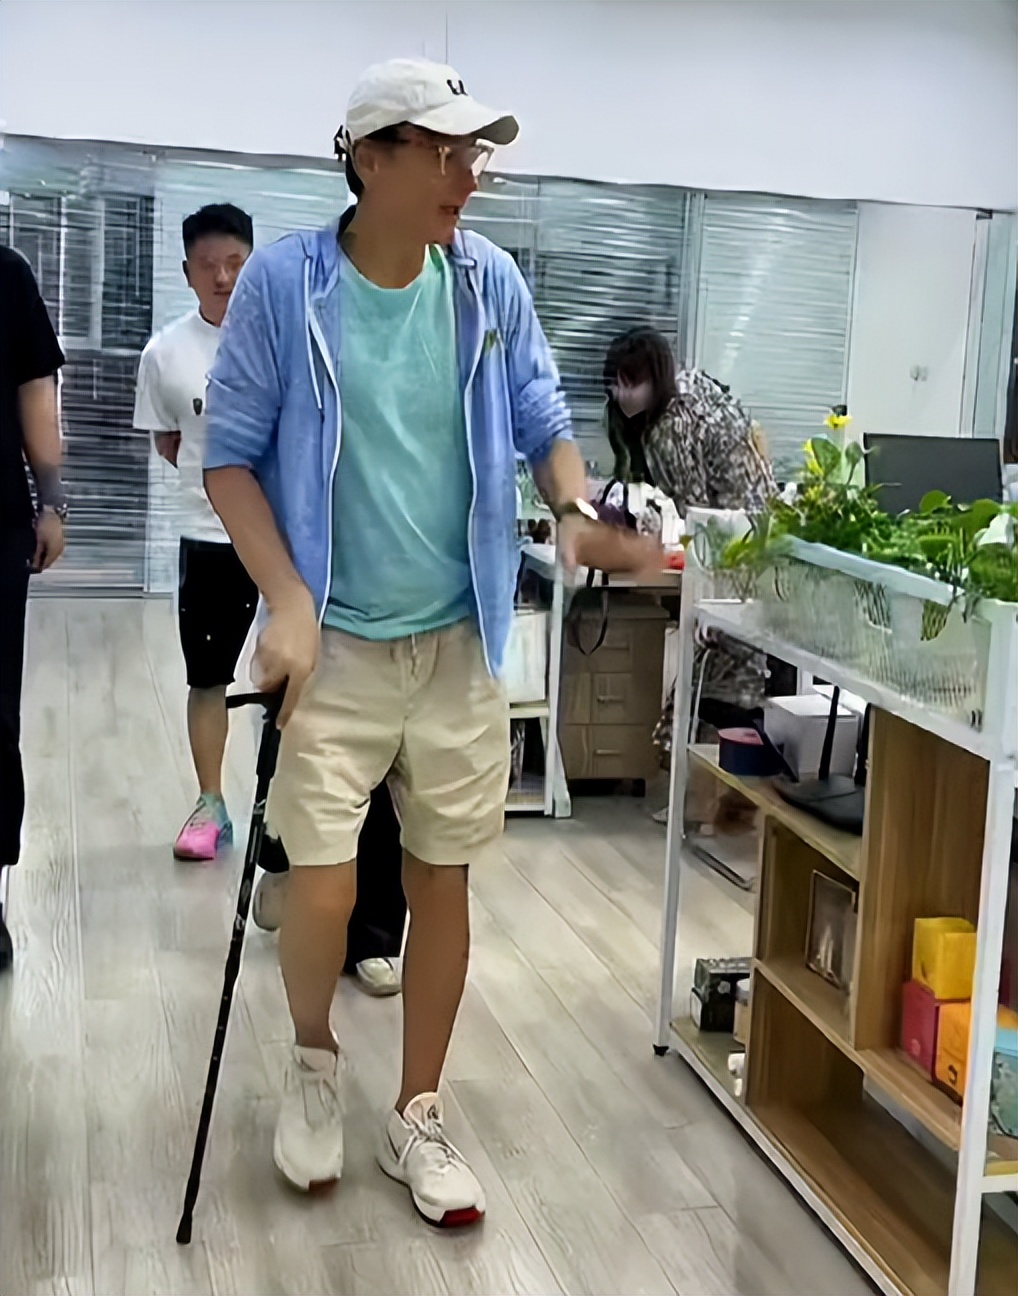 61岁林俊贤拄拐杖现身，身材瘦弱引担忧，被网友赞比刘德华还帅气